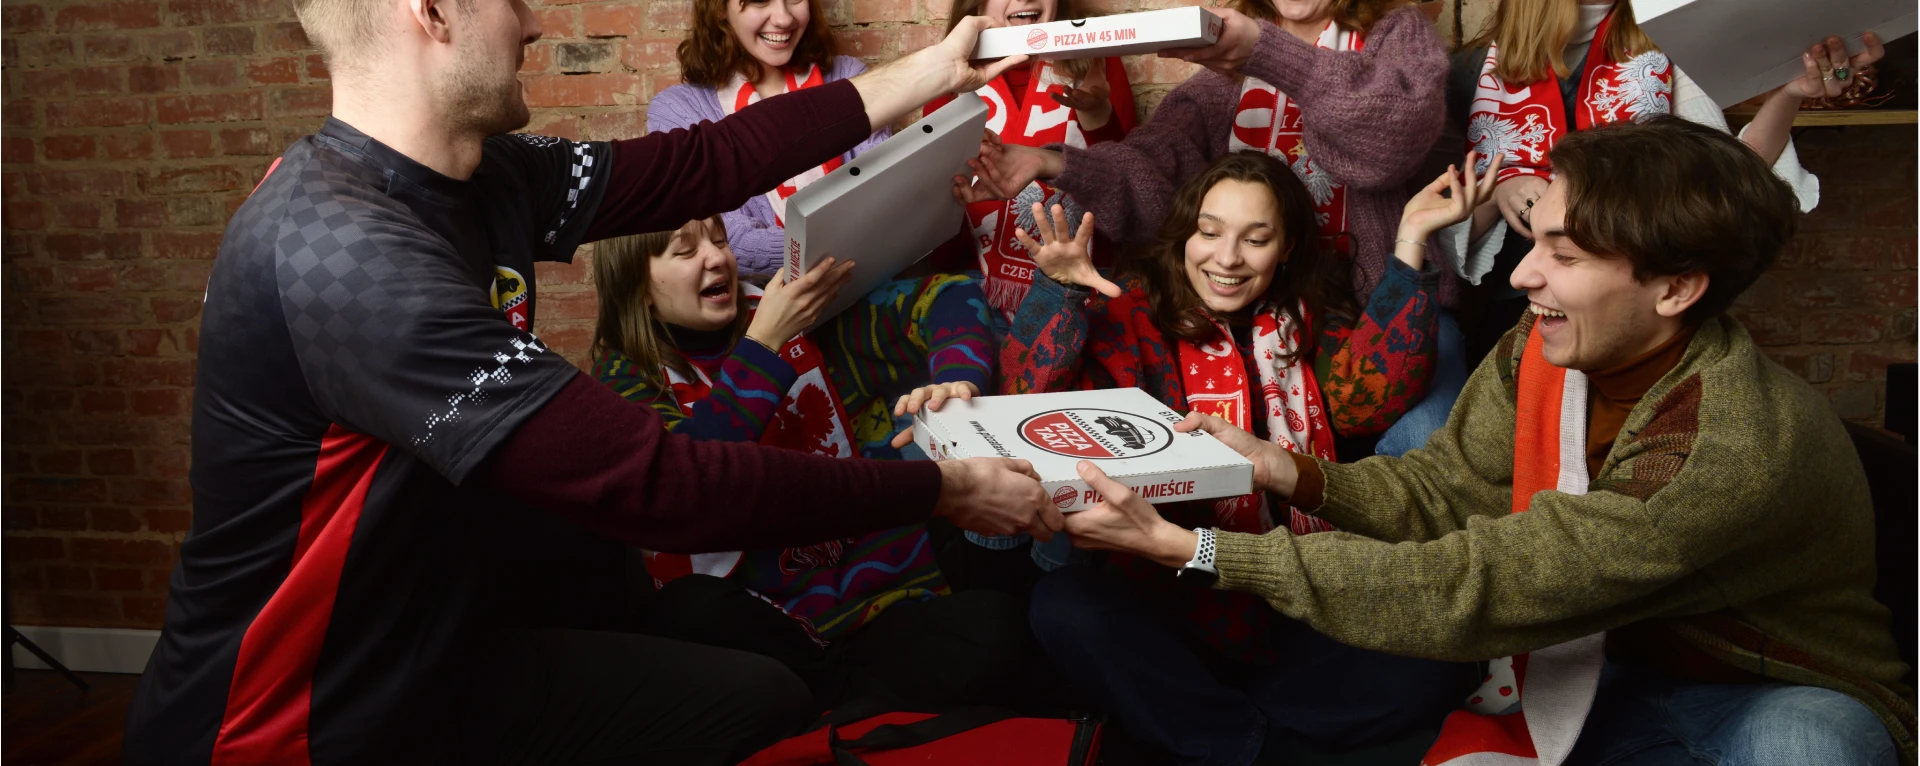 Grupa ludzi częstujących się pizzą